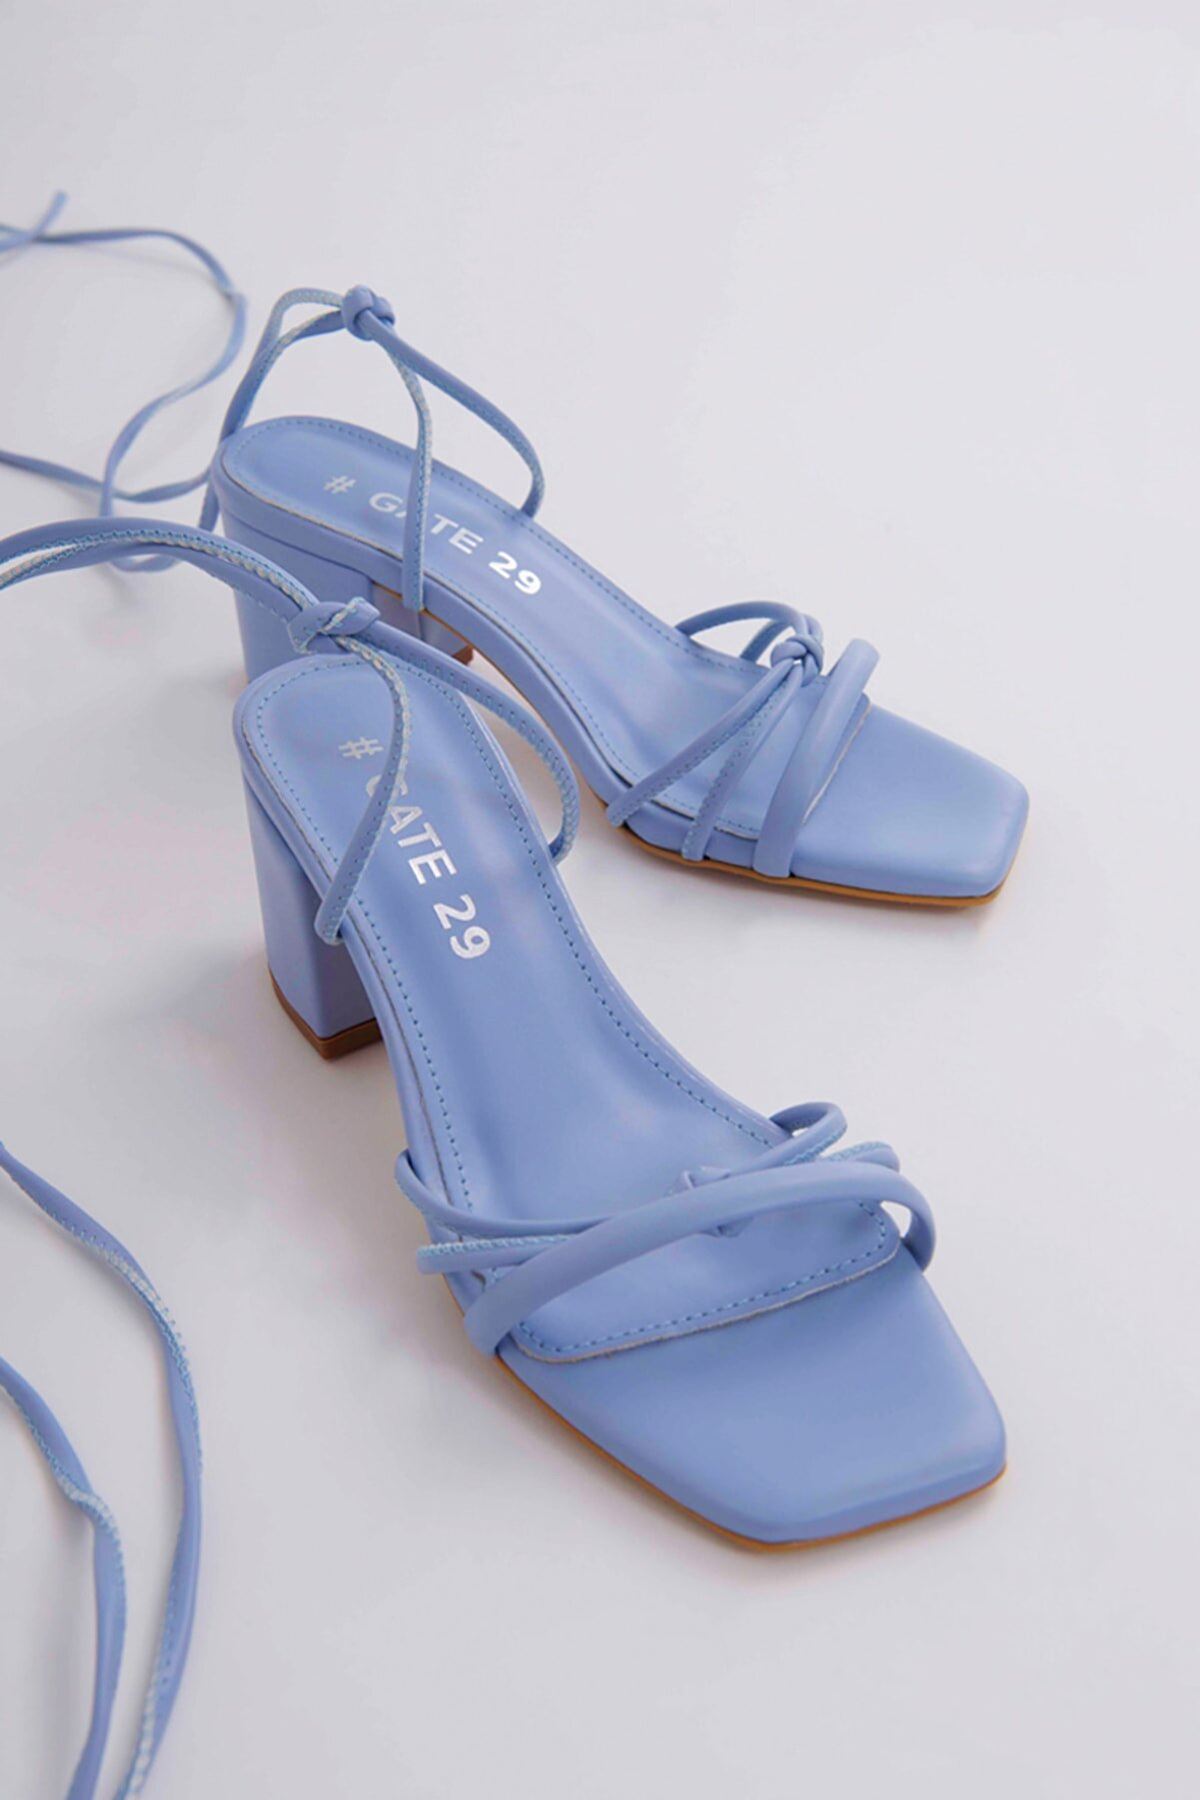 Kadın Bantlı Ve İpli Topuklu Ayakkabı Sandalet Ella Gate Shoes-Mavi